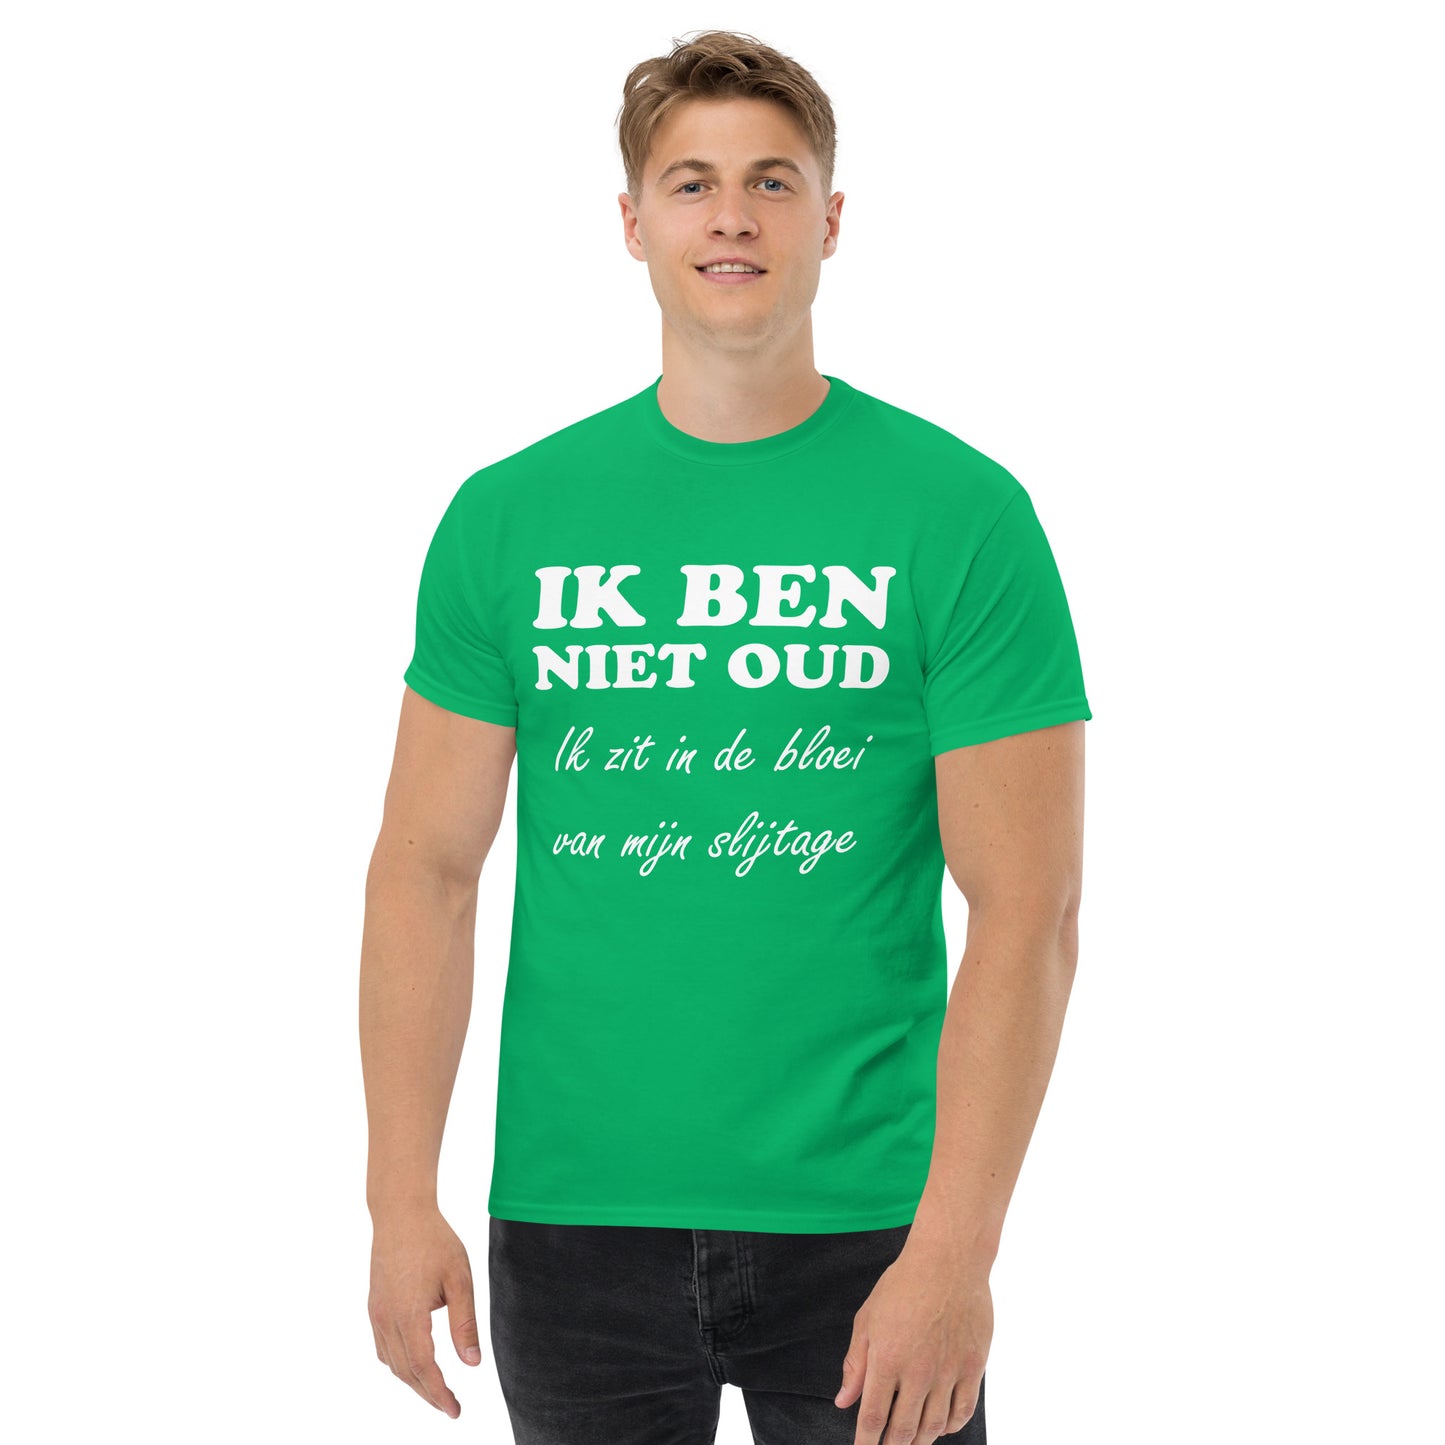 Men with Irish green T-shirt with the text in white "IK BEN NIET OUD ik zit in de bloei van mijn slijtage"